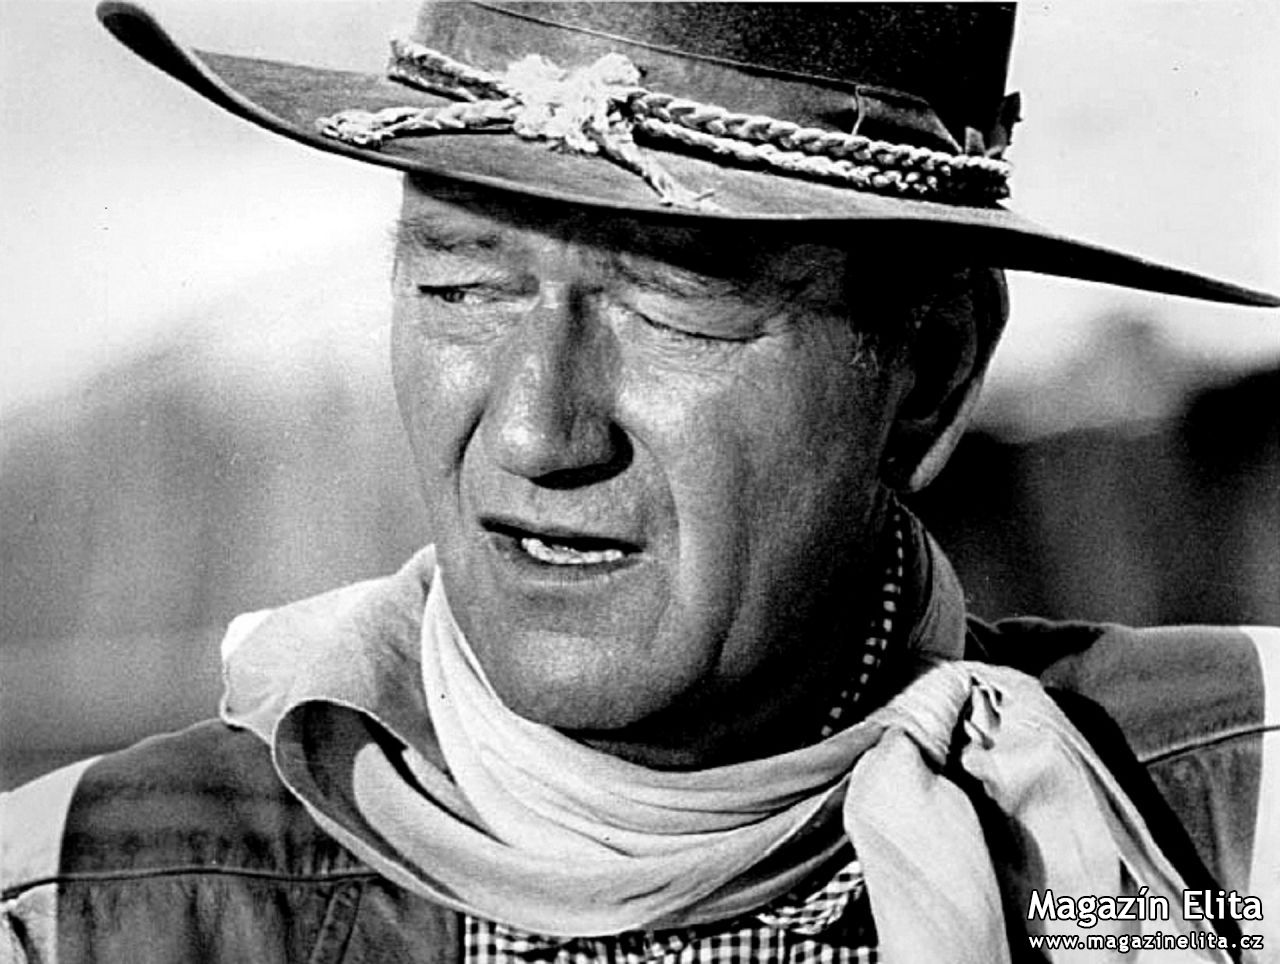 Hon na oscarového herce John Wayne, který je 40 let po smrti!